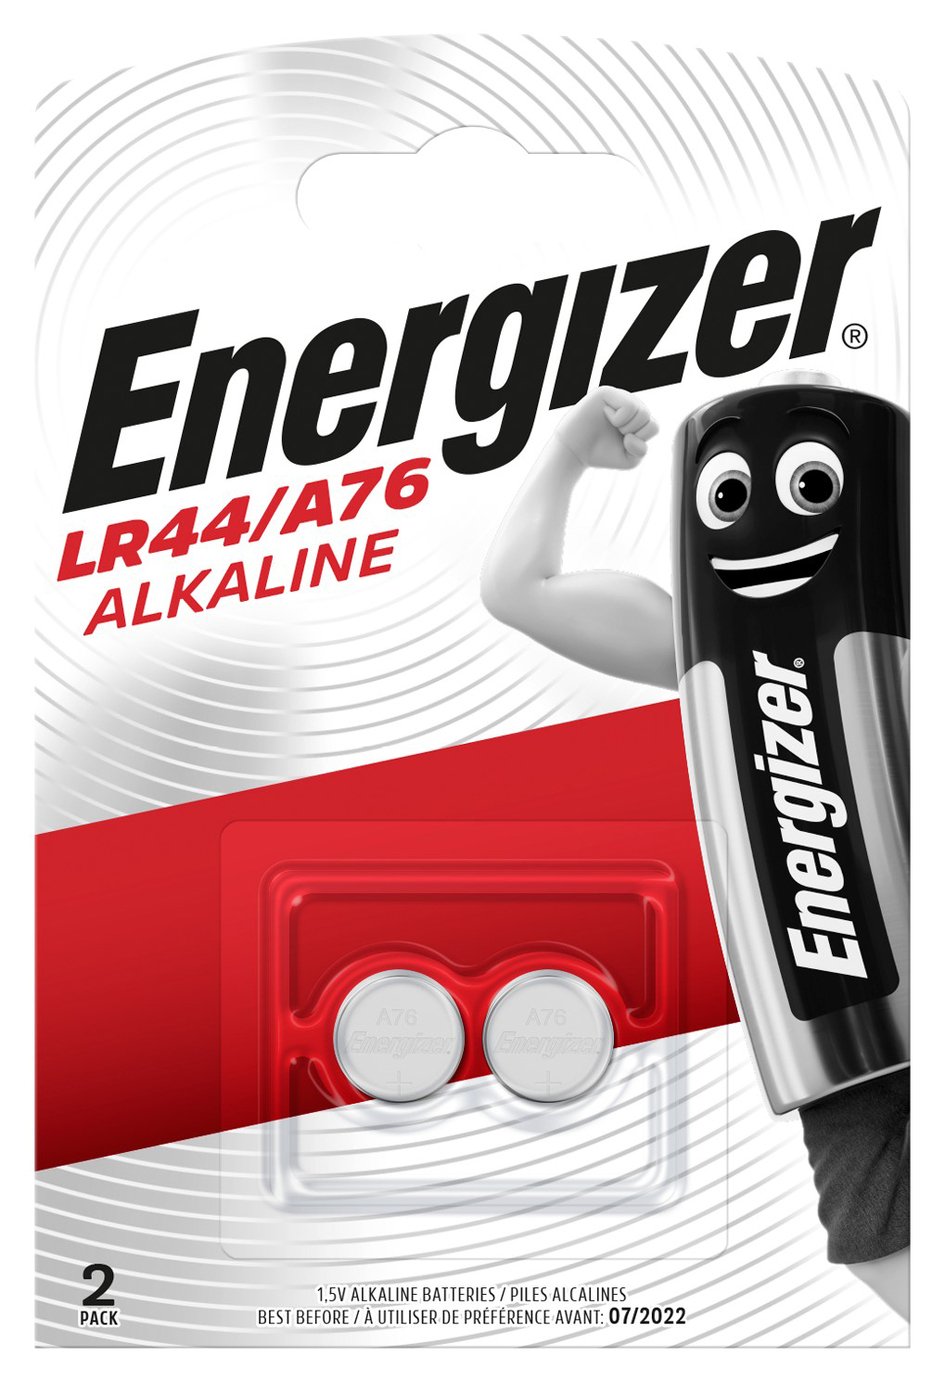 Energizer LR44 Batteries Review